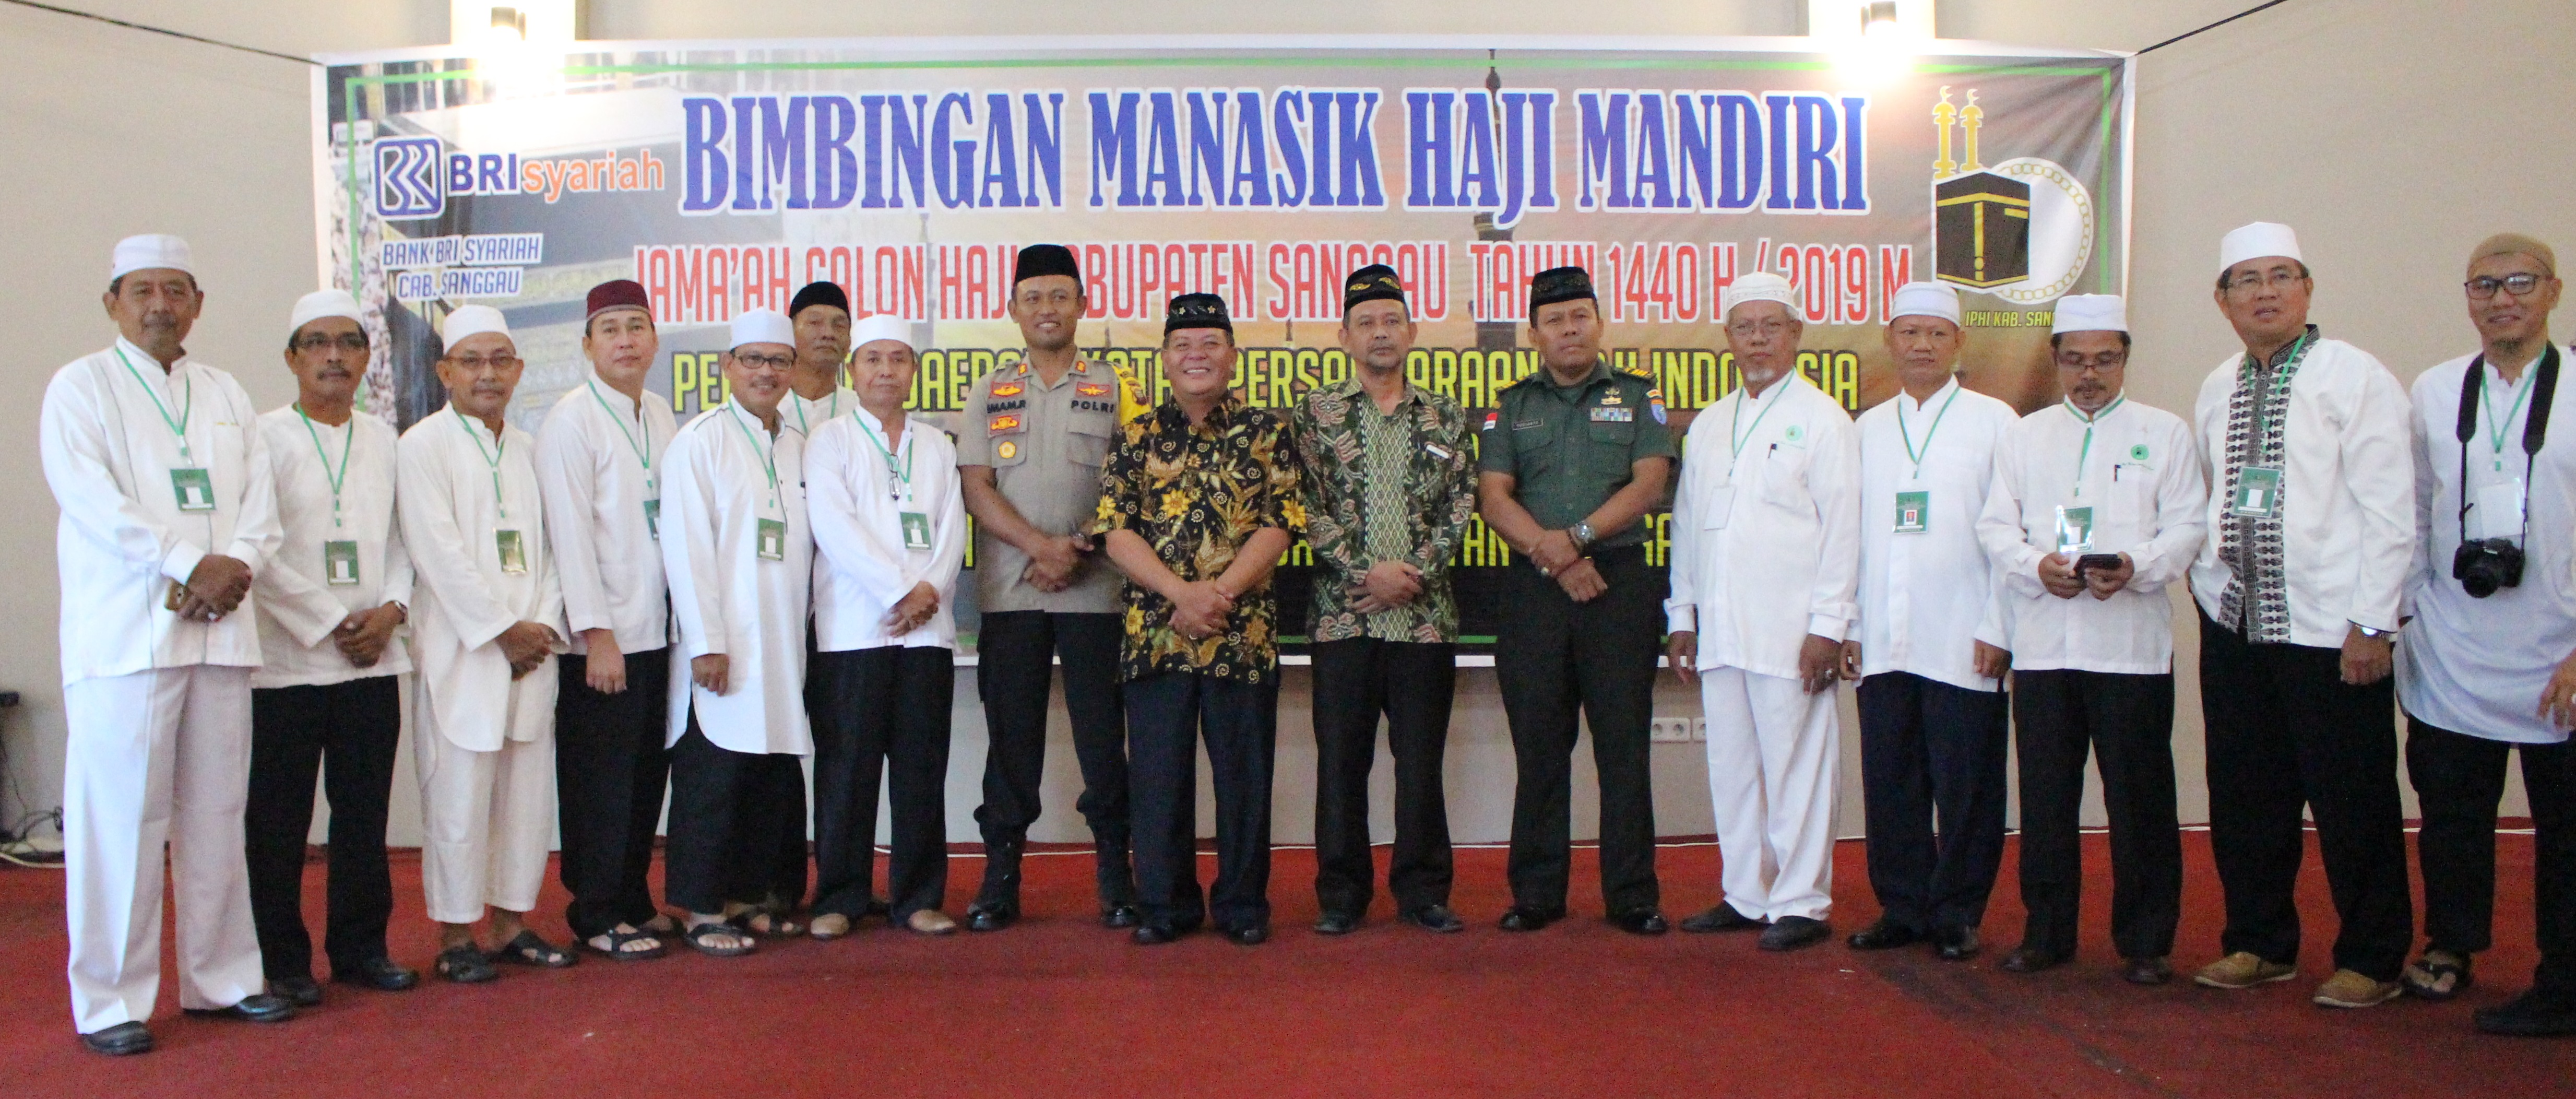 Sebanyak 110 Jama’ah Haji Kabupaten Sanggau Mengikuti Bimbingan Manasik Haji